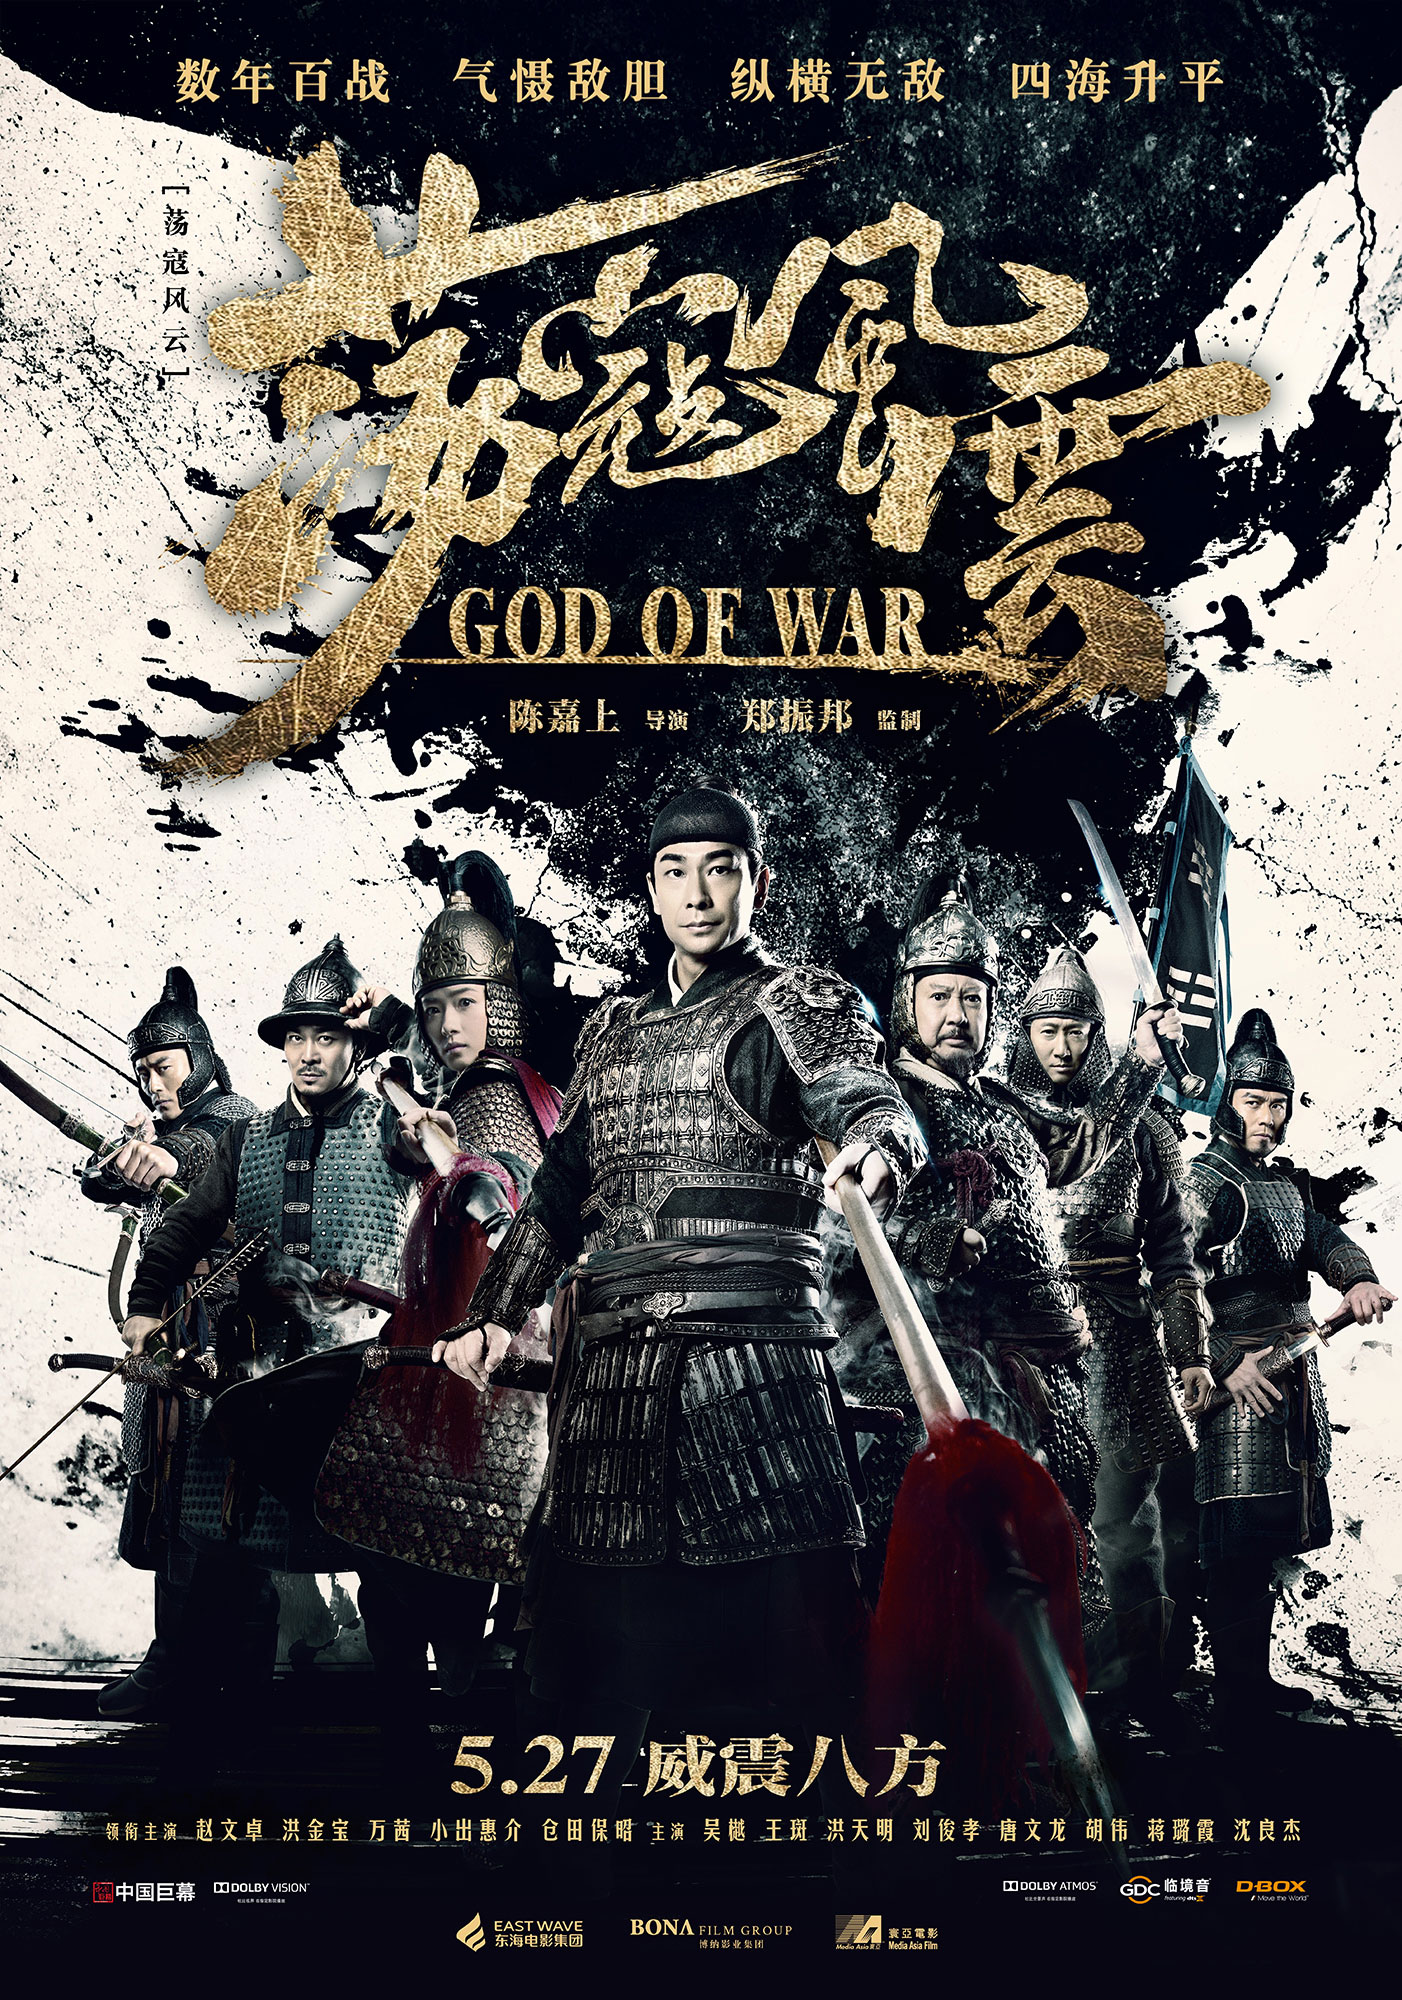 Nonton film God of War layarkaca21 indoxx1 ganool online streaming terbaru